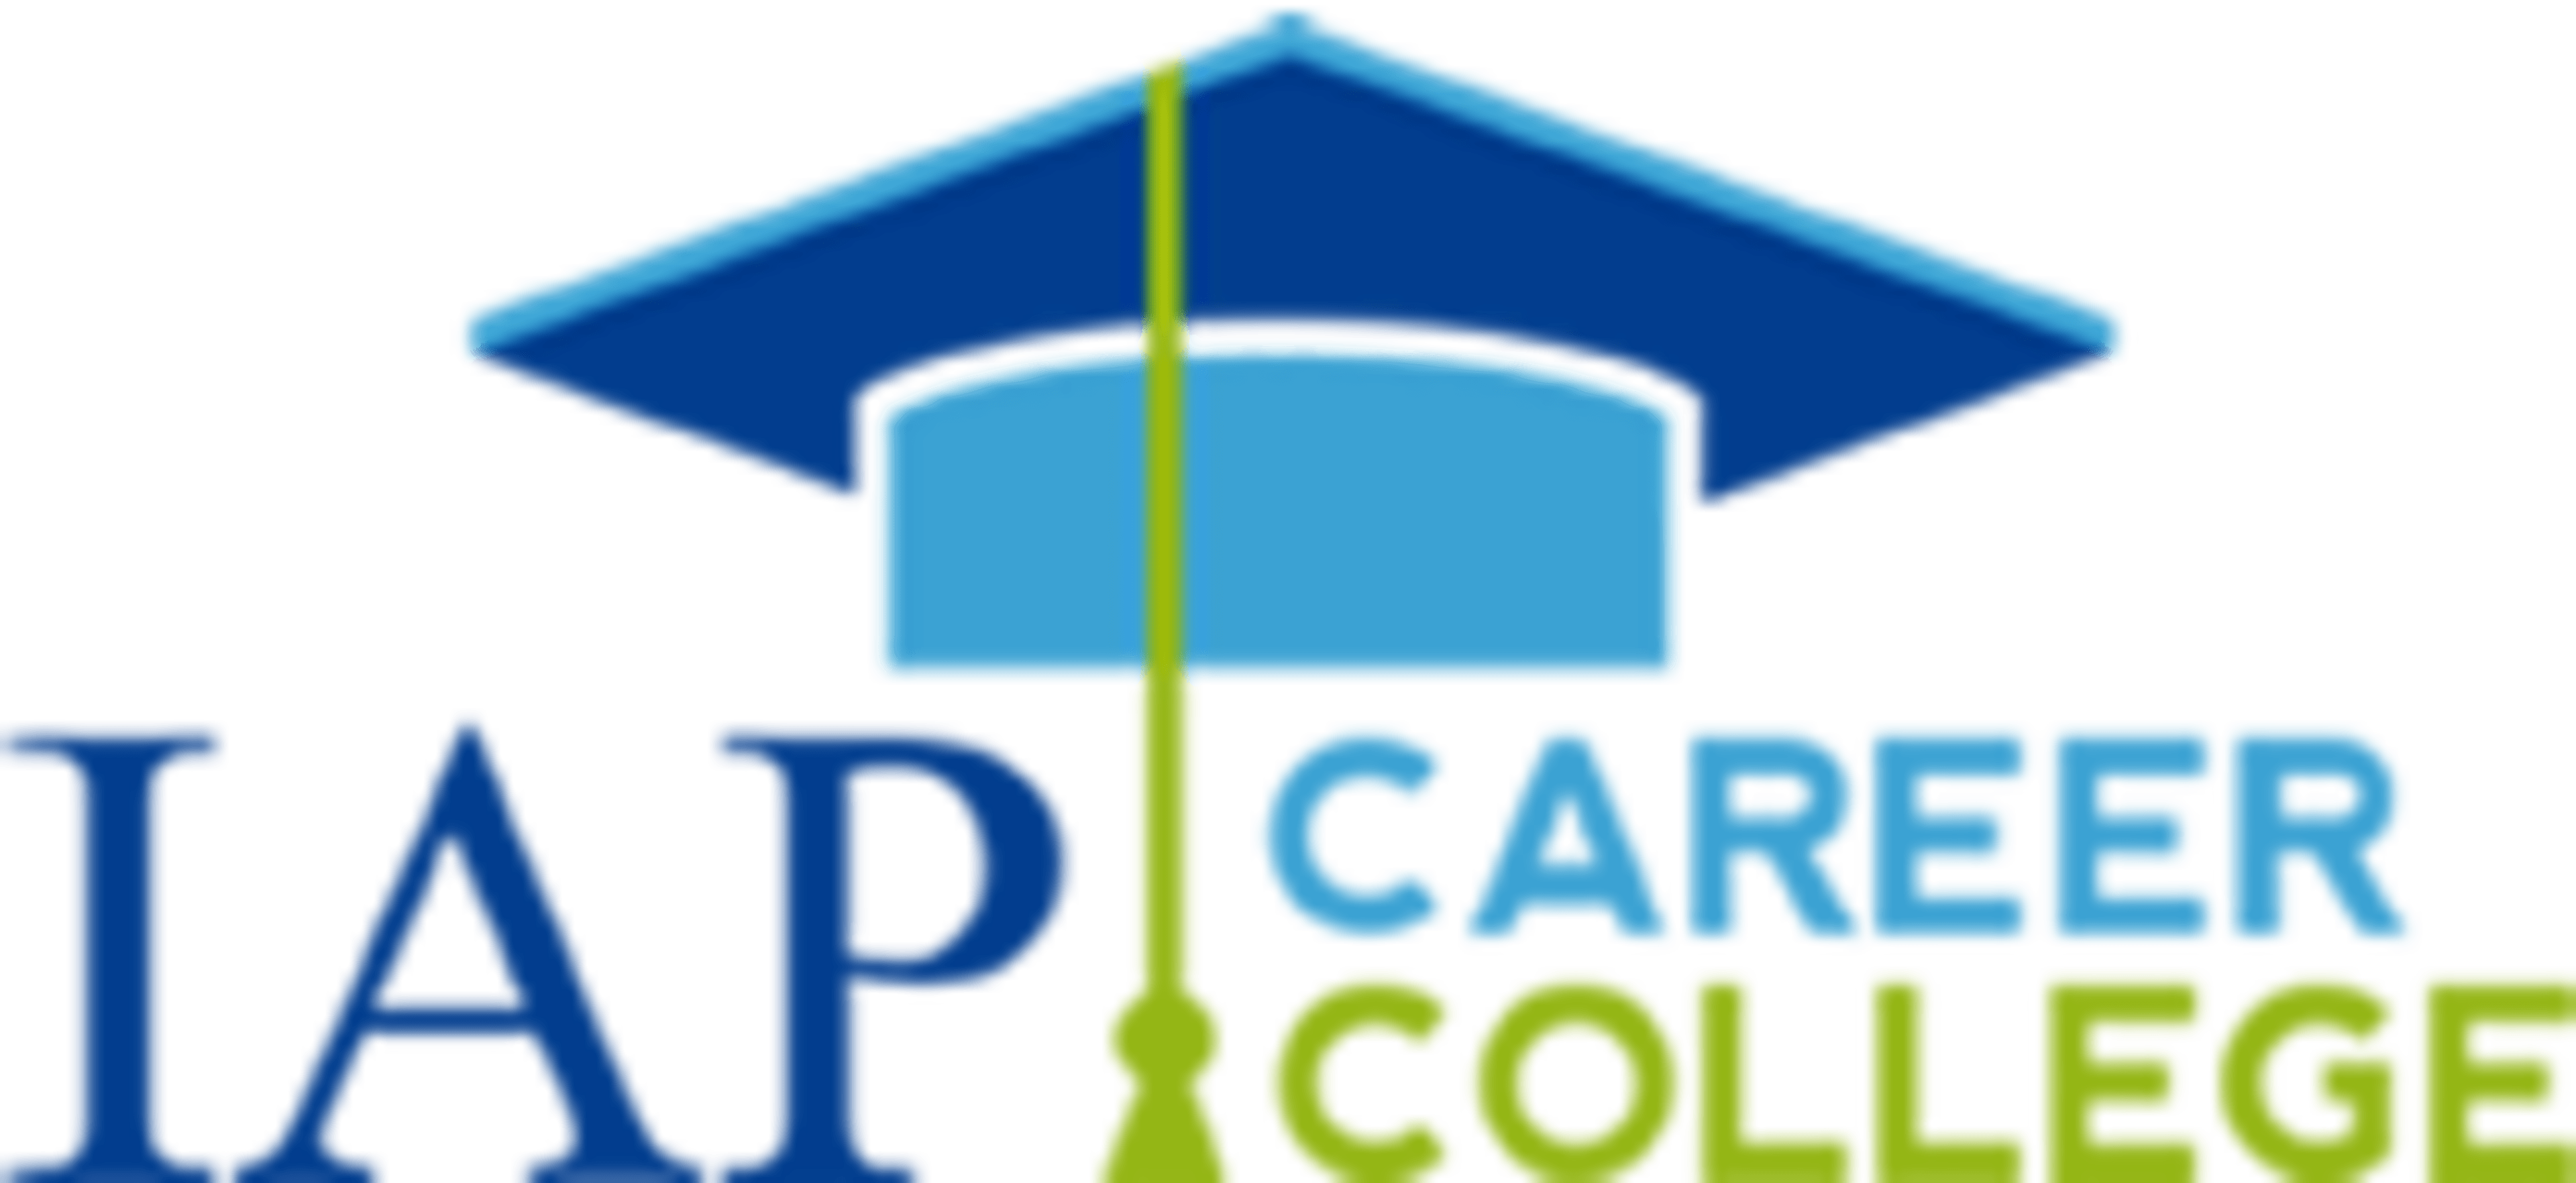 IAP Career CollegeCode